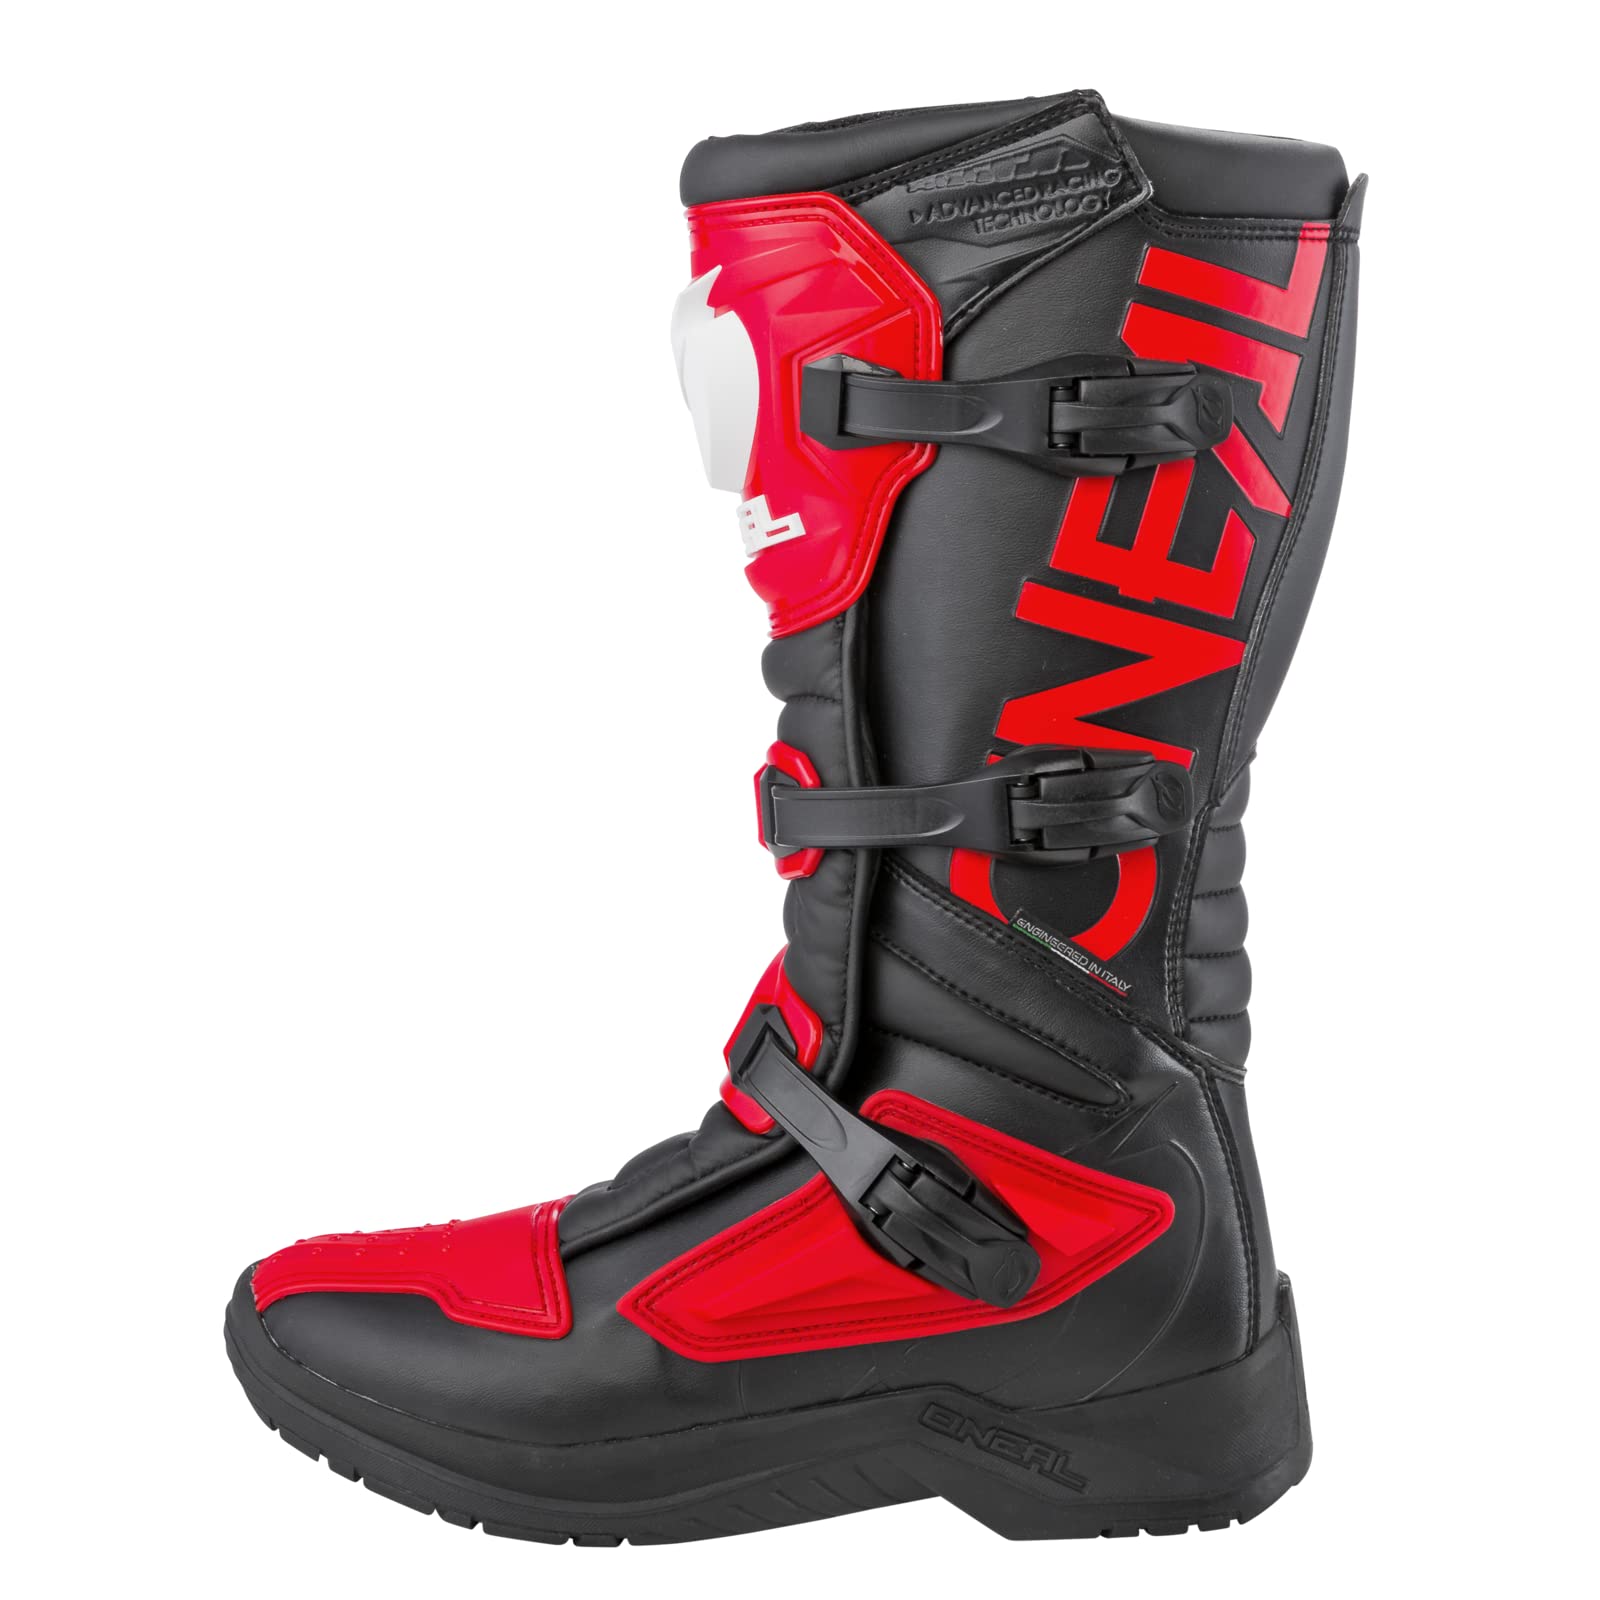 O'NEAL | Motocross-Stiefel | Motorrad Enduro | Innerer Knöchel-, Fuß, und Schaltzonenschutz, Perforiertes Innenfutter, hochwertiger Mikrofaser | Boots RSX | Erwachsene | Rot | Größe 40